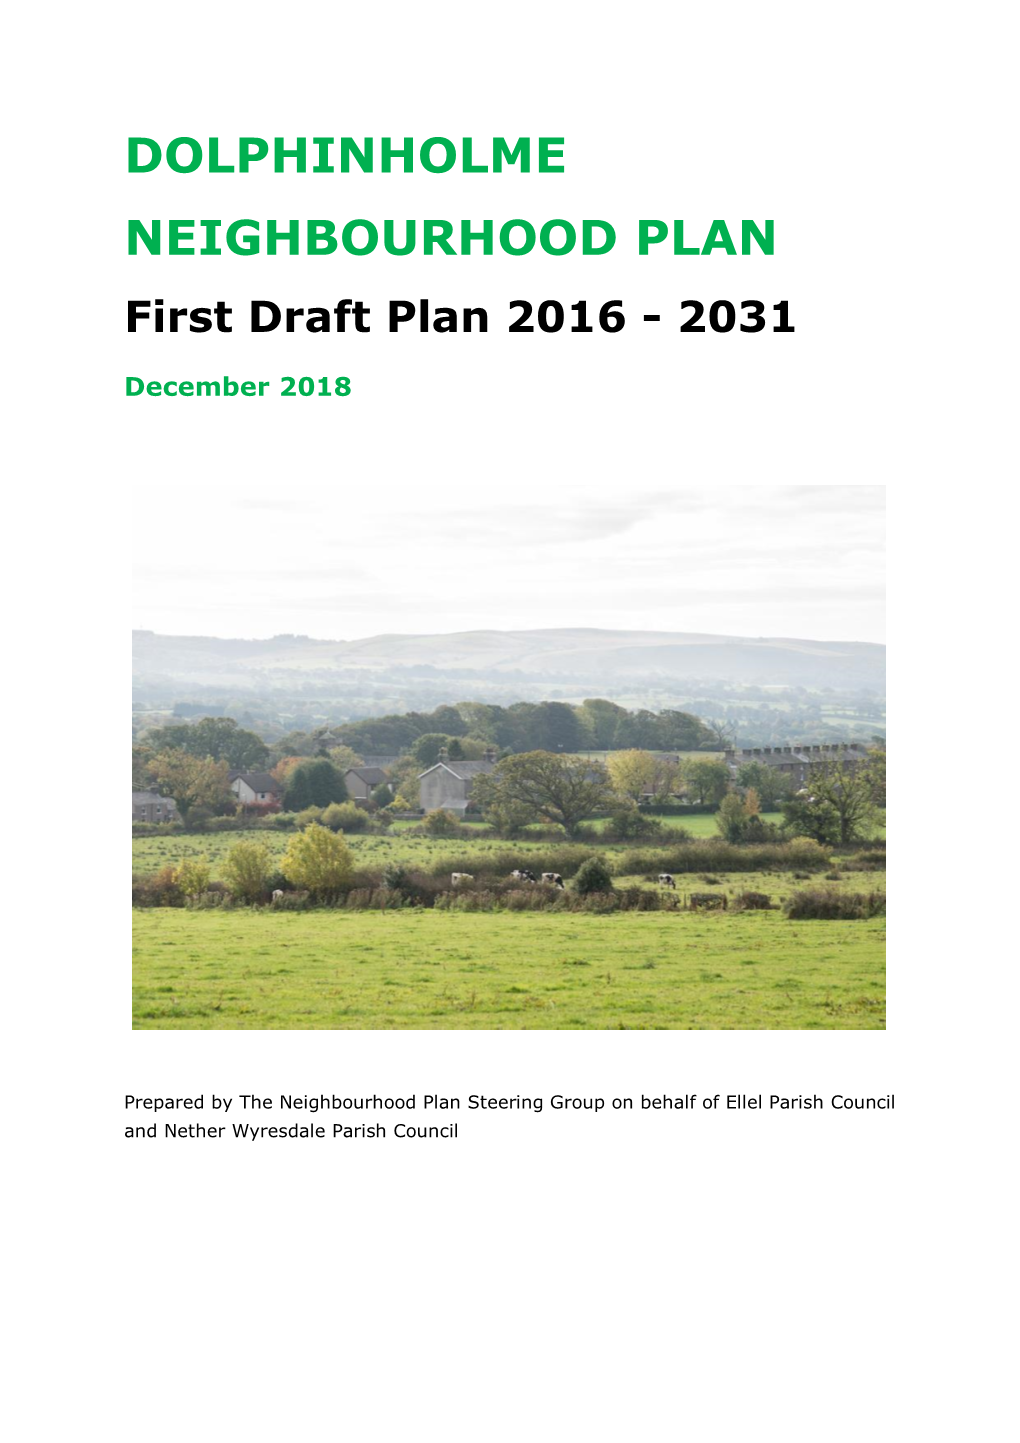 DOLPHINHOLME NEIGHBOURHOOD PLAN First Draft Plan 2016 - 2031